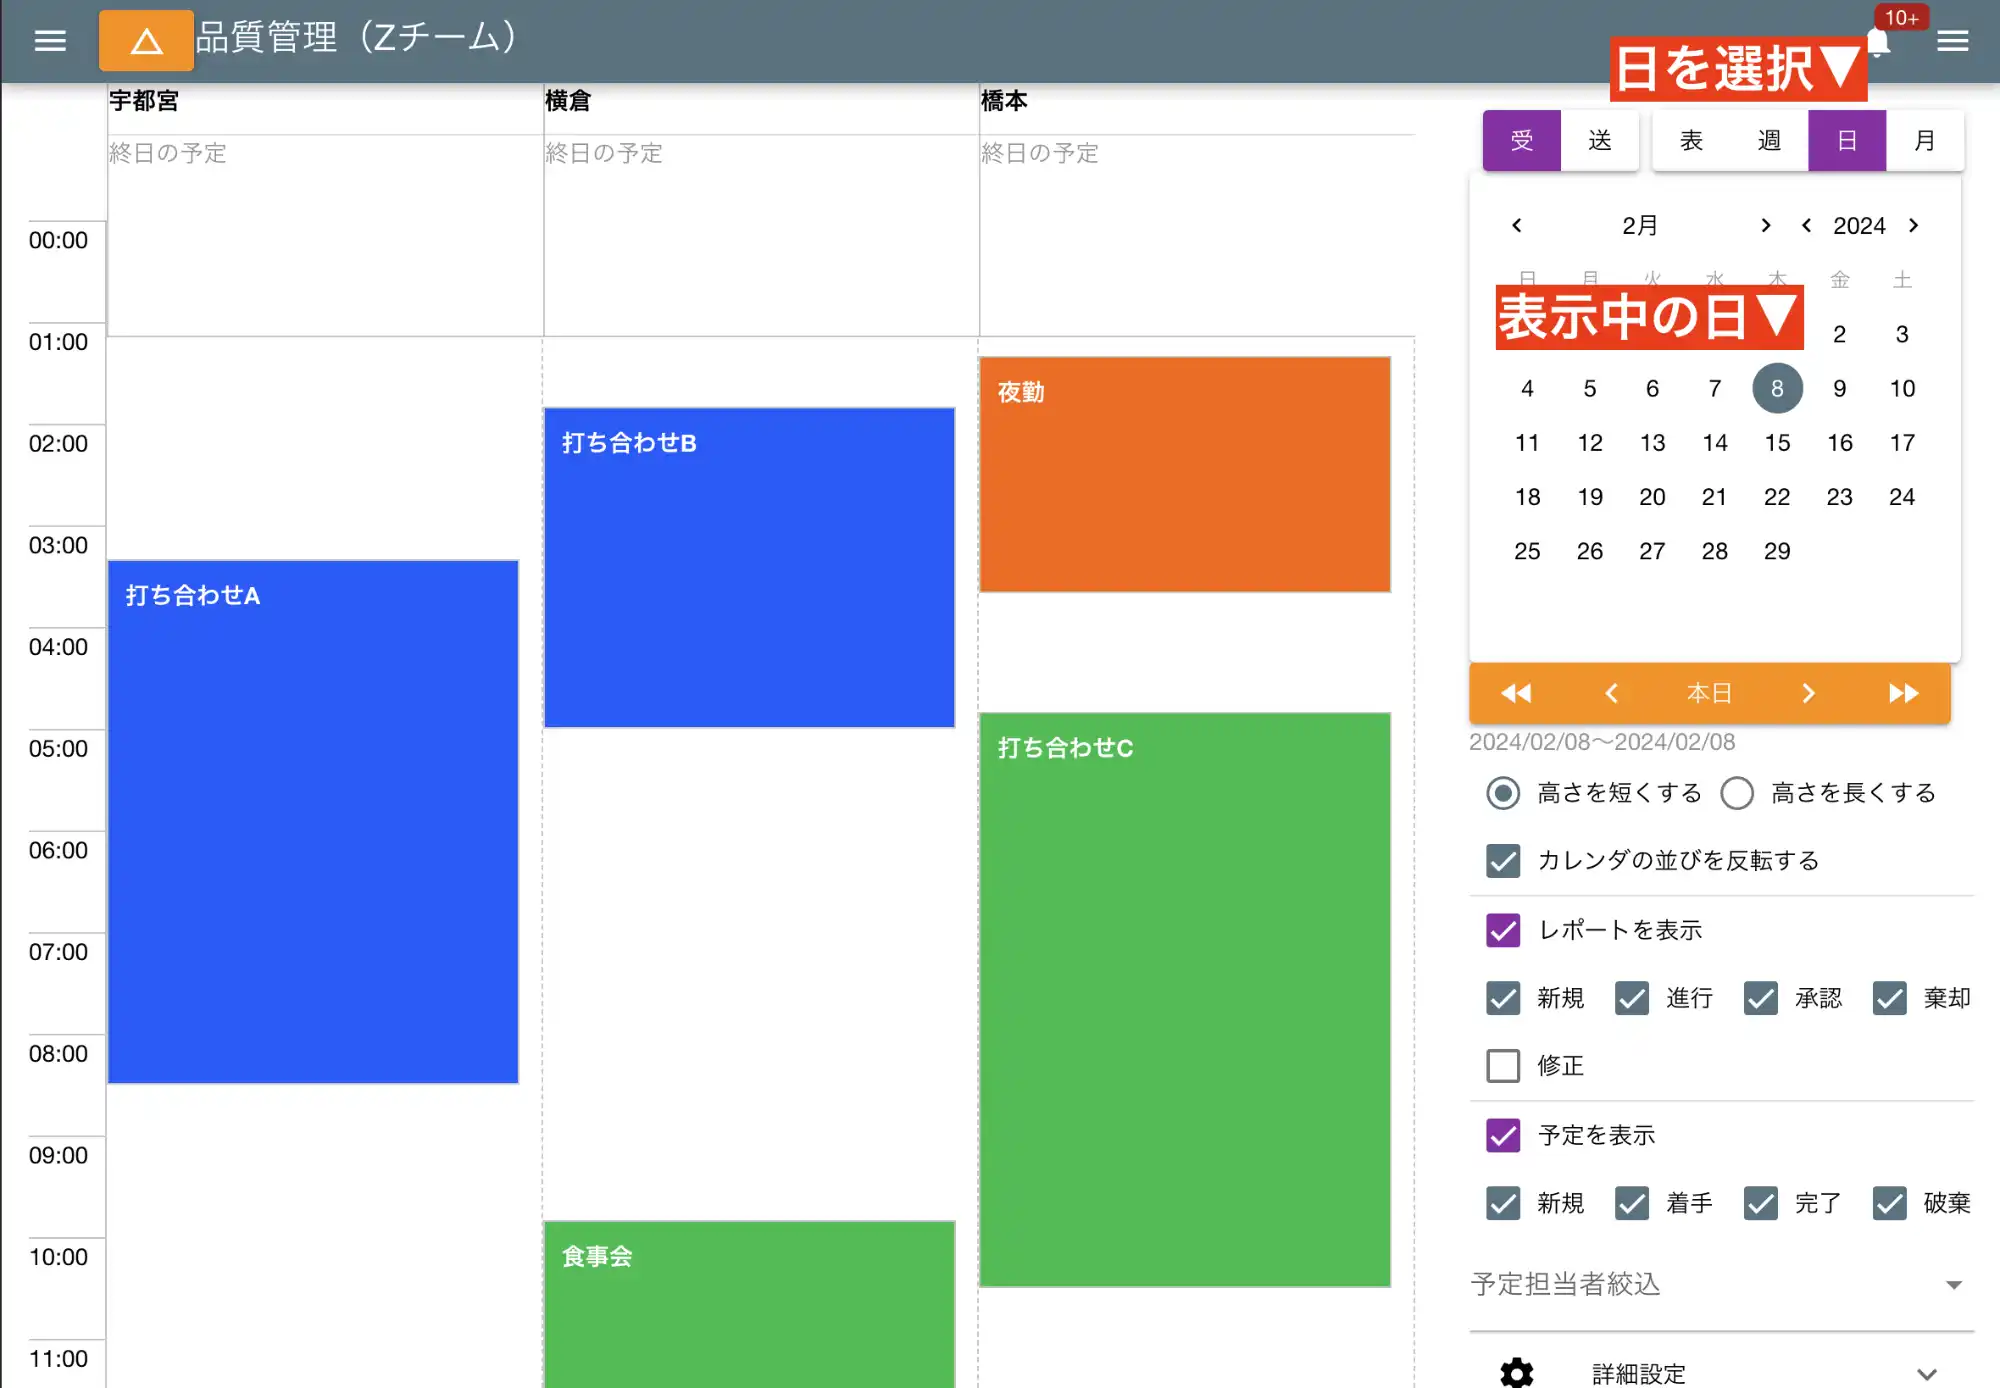 日カレンダーは１日の予定をスタッフ別に並べて表示するモードです